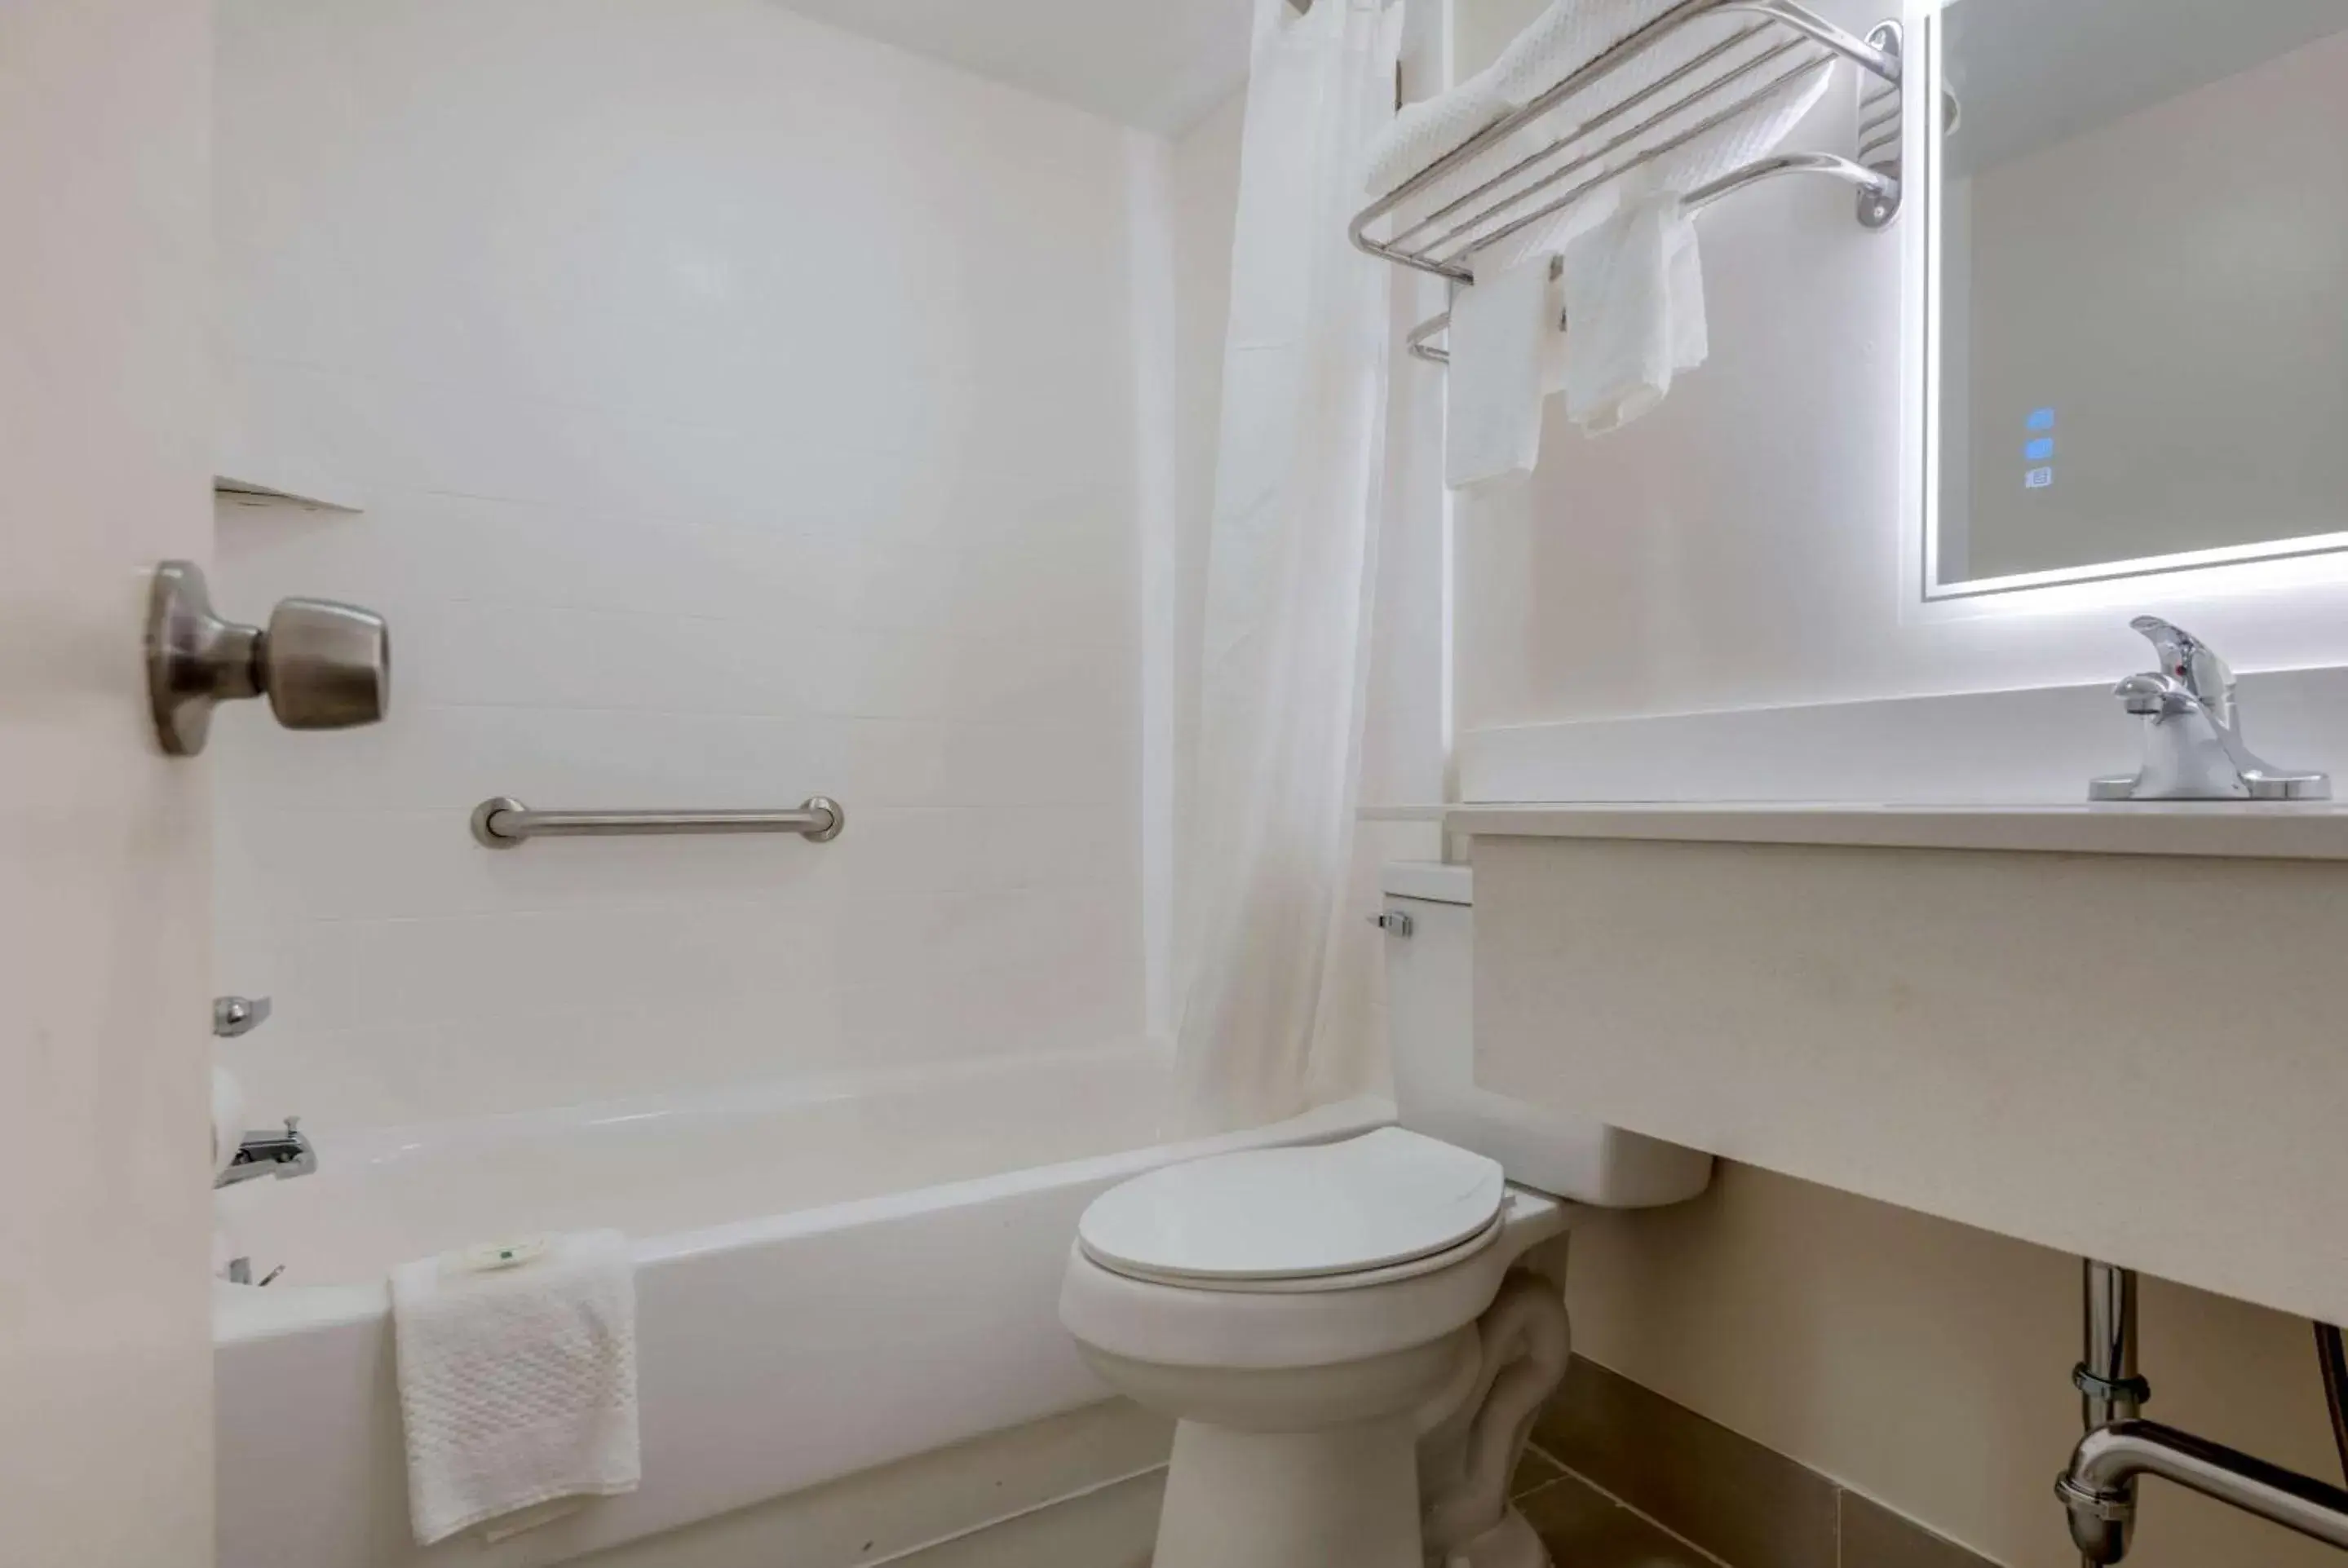 Bedroom, Bathroom in Quality Inn & Suites New Hartford - Utica